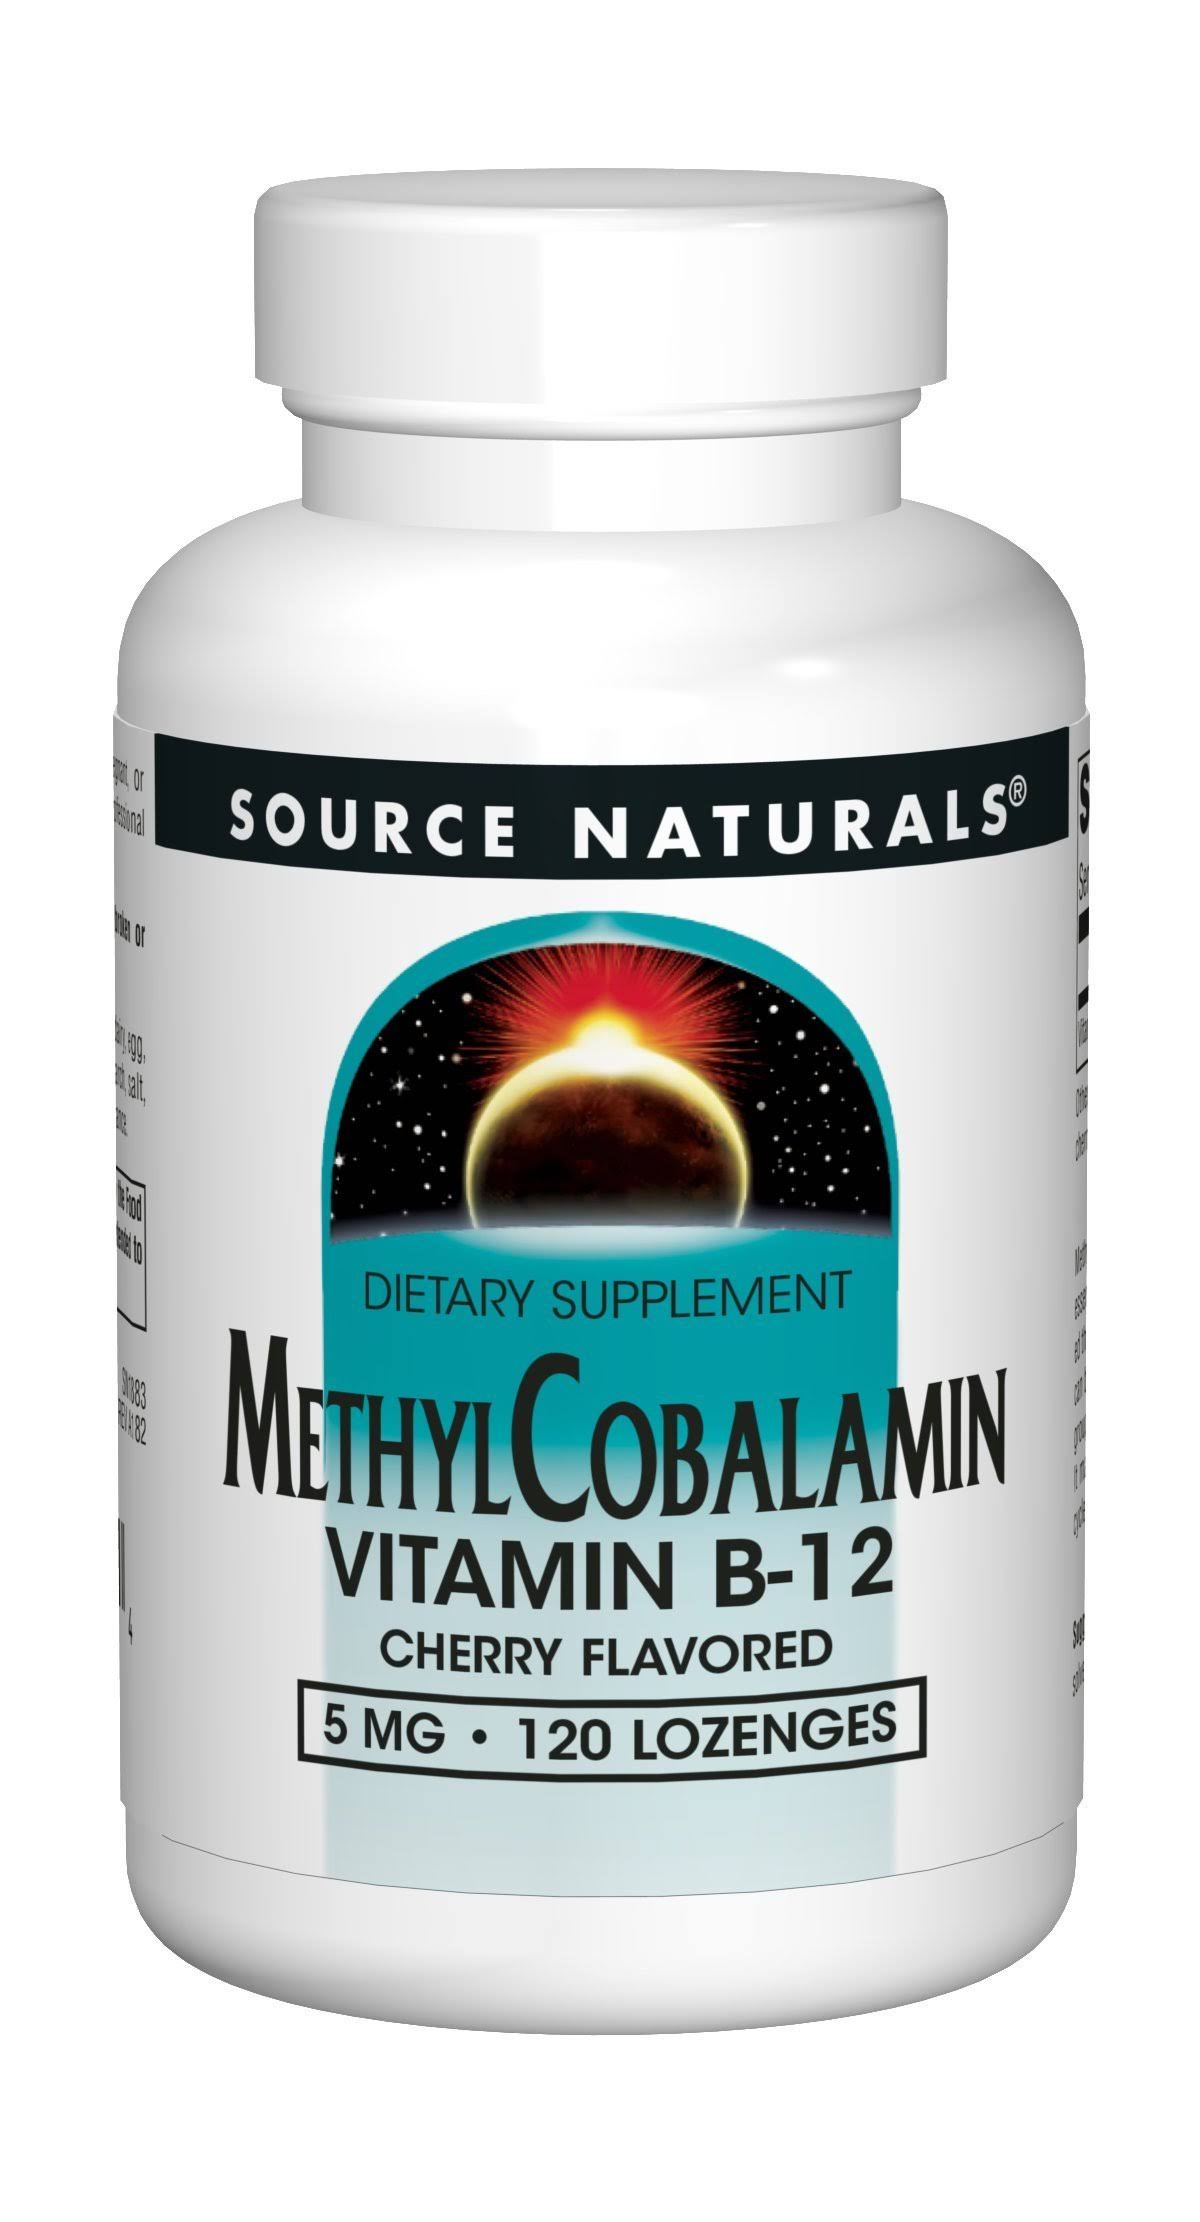 Source Naturals Methylcobalamin Vitamin B-12 - 5mg, Cherry